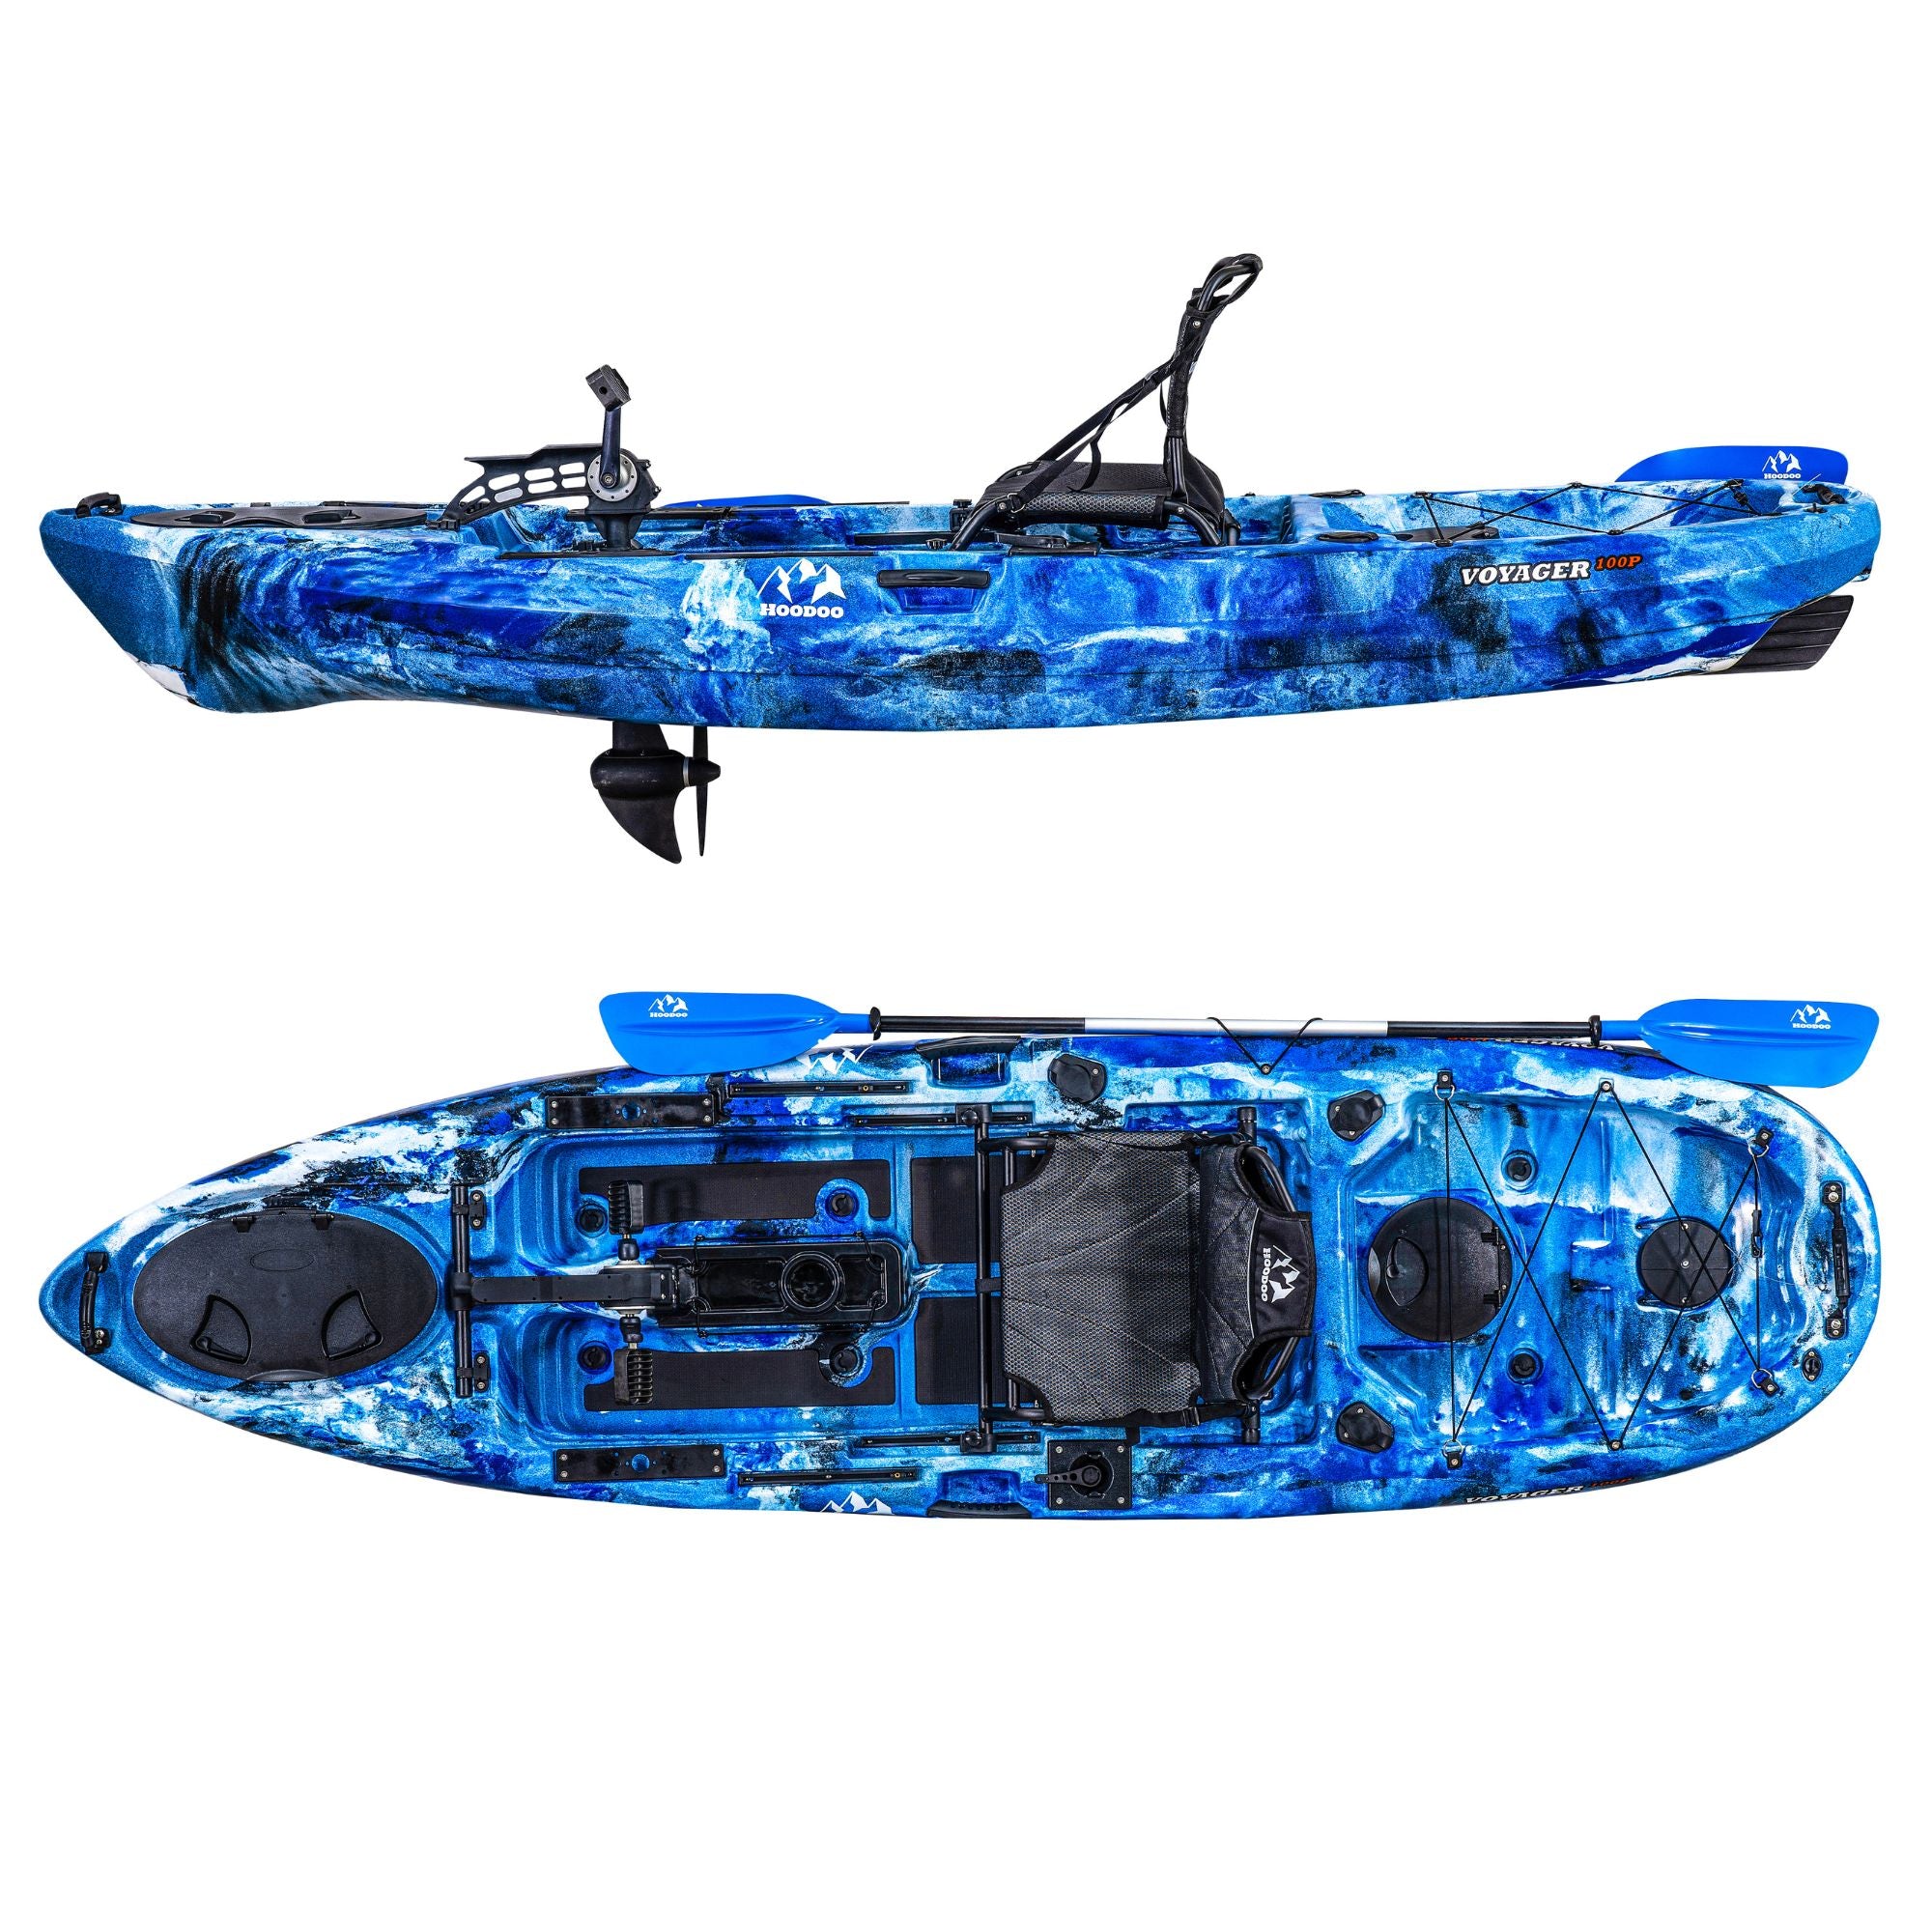 Hoodoo Sports  fishing kayaks, microskiffs, coolers and more